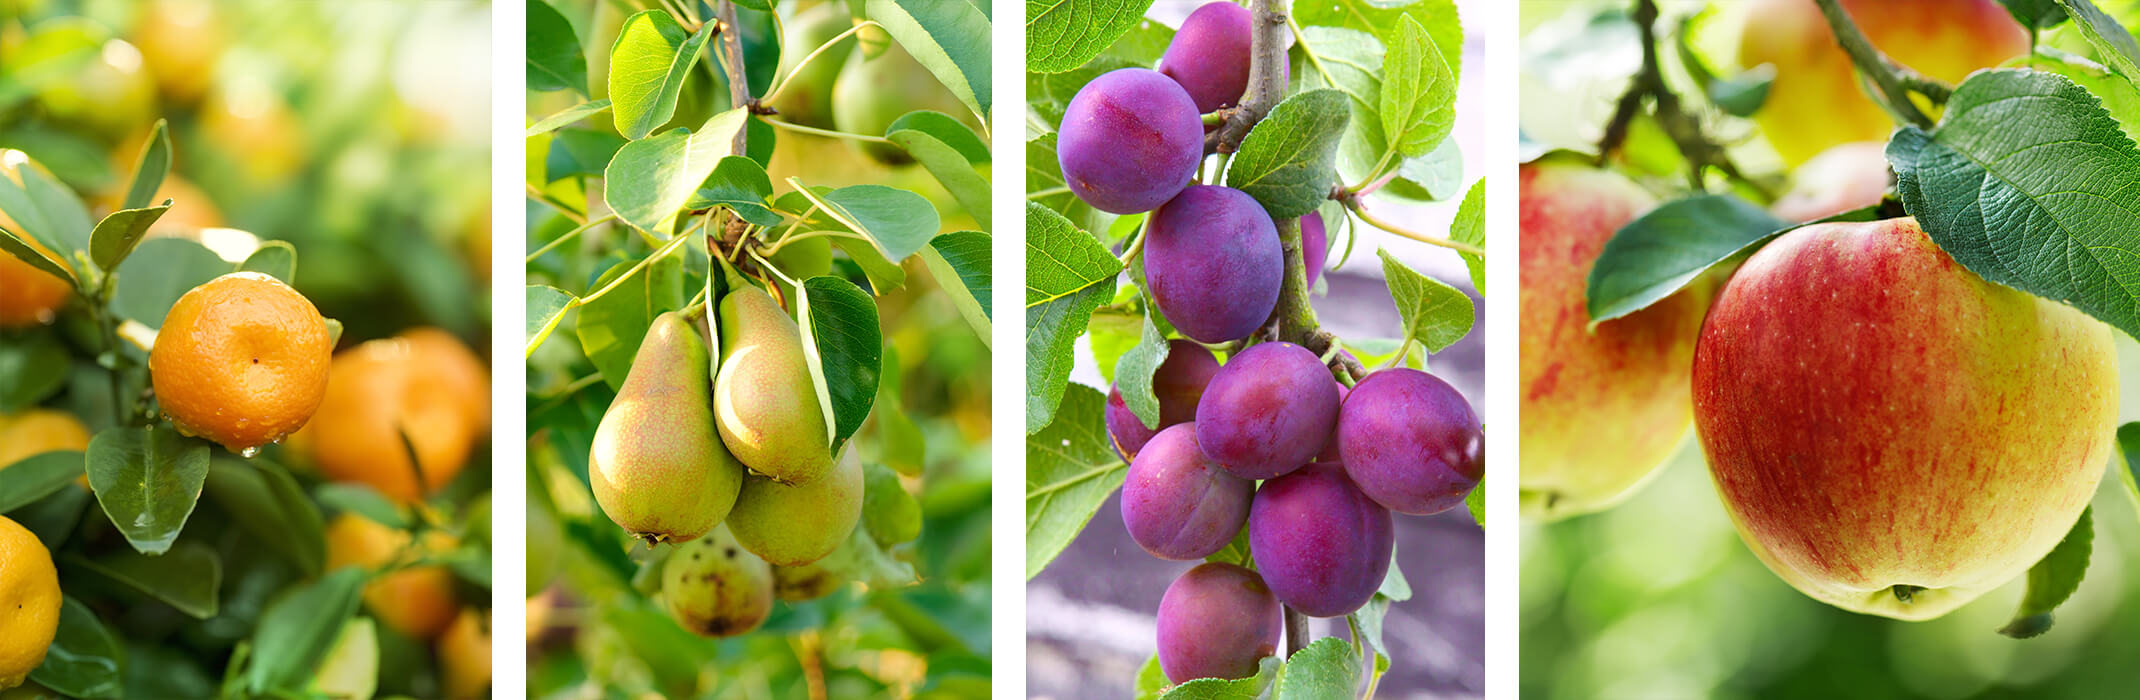 4 images: mandarines on a tree, pears on a tree, plums on a tree, and apples on a tree